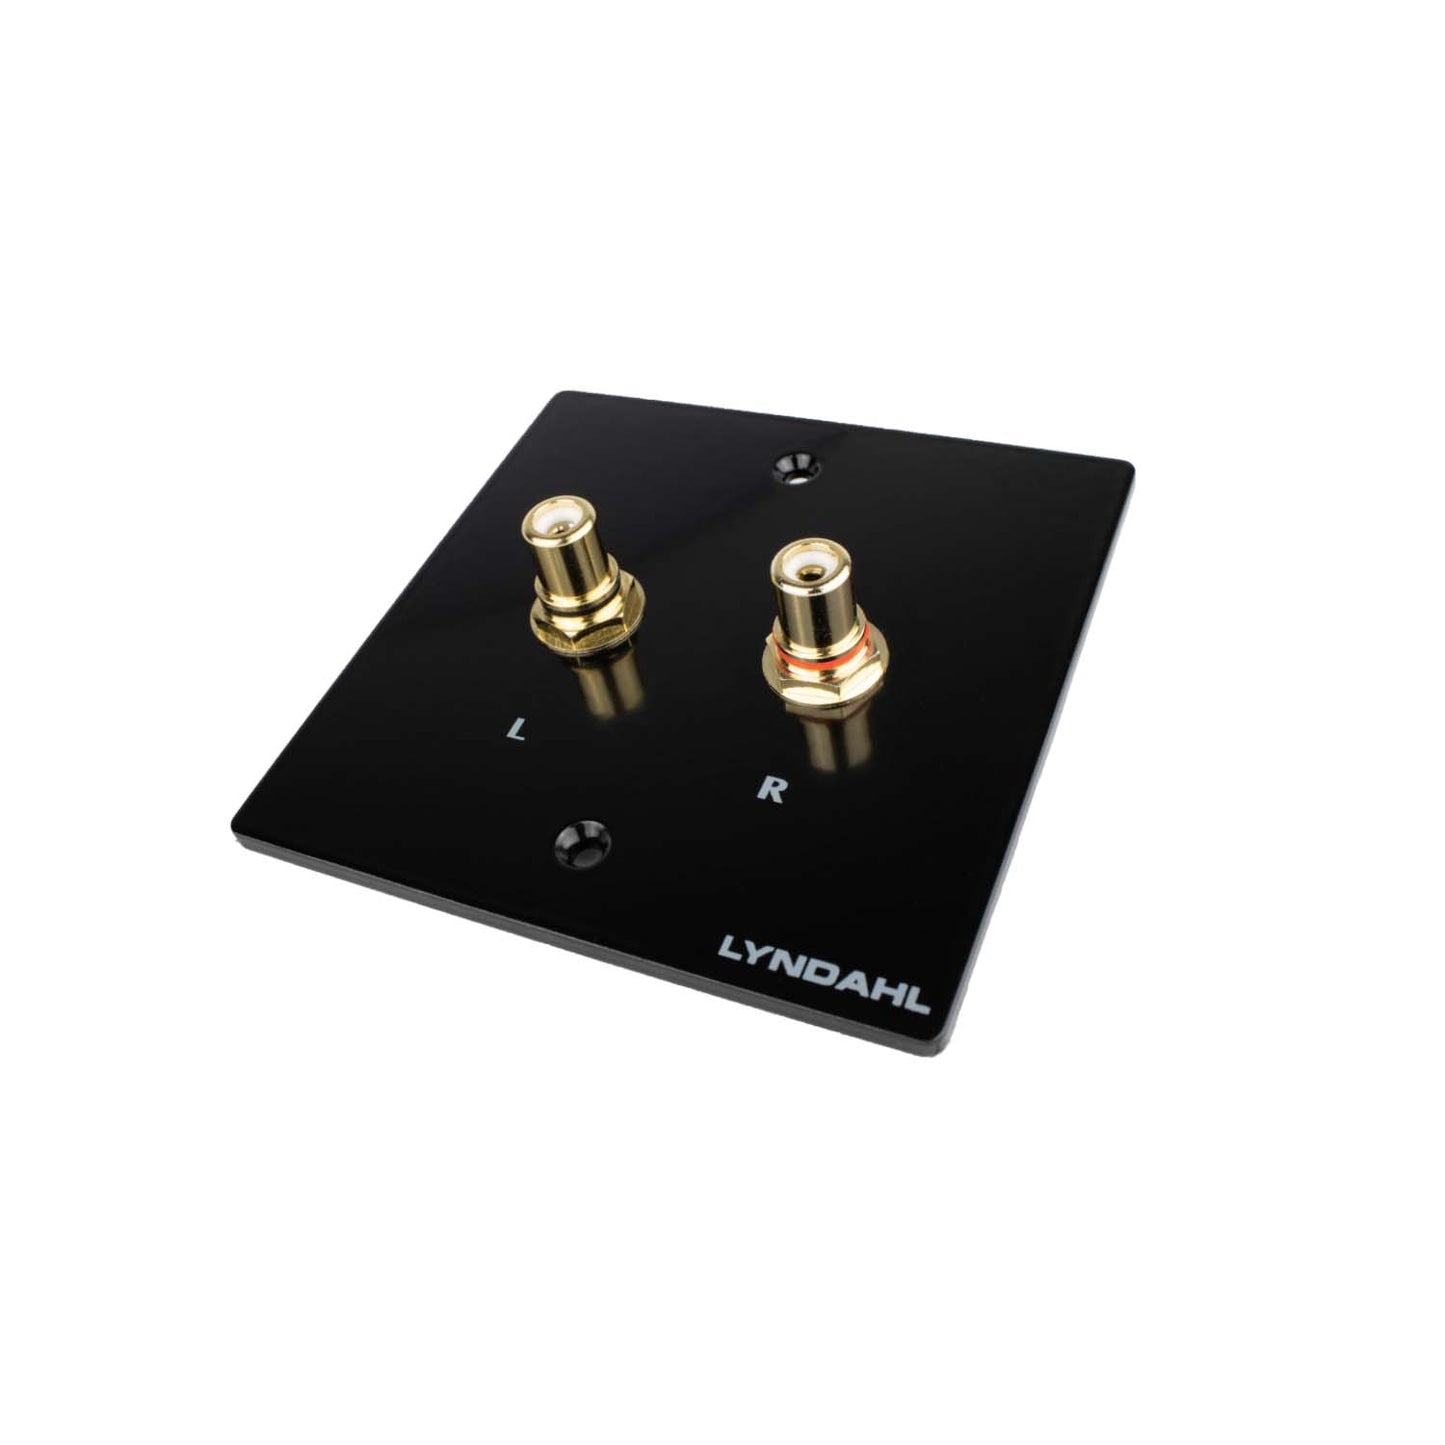 Écrans haut de gamme Lyndahl pour haut-parleurs et systèmes surround